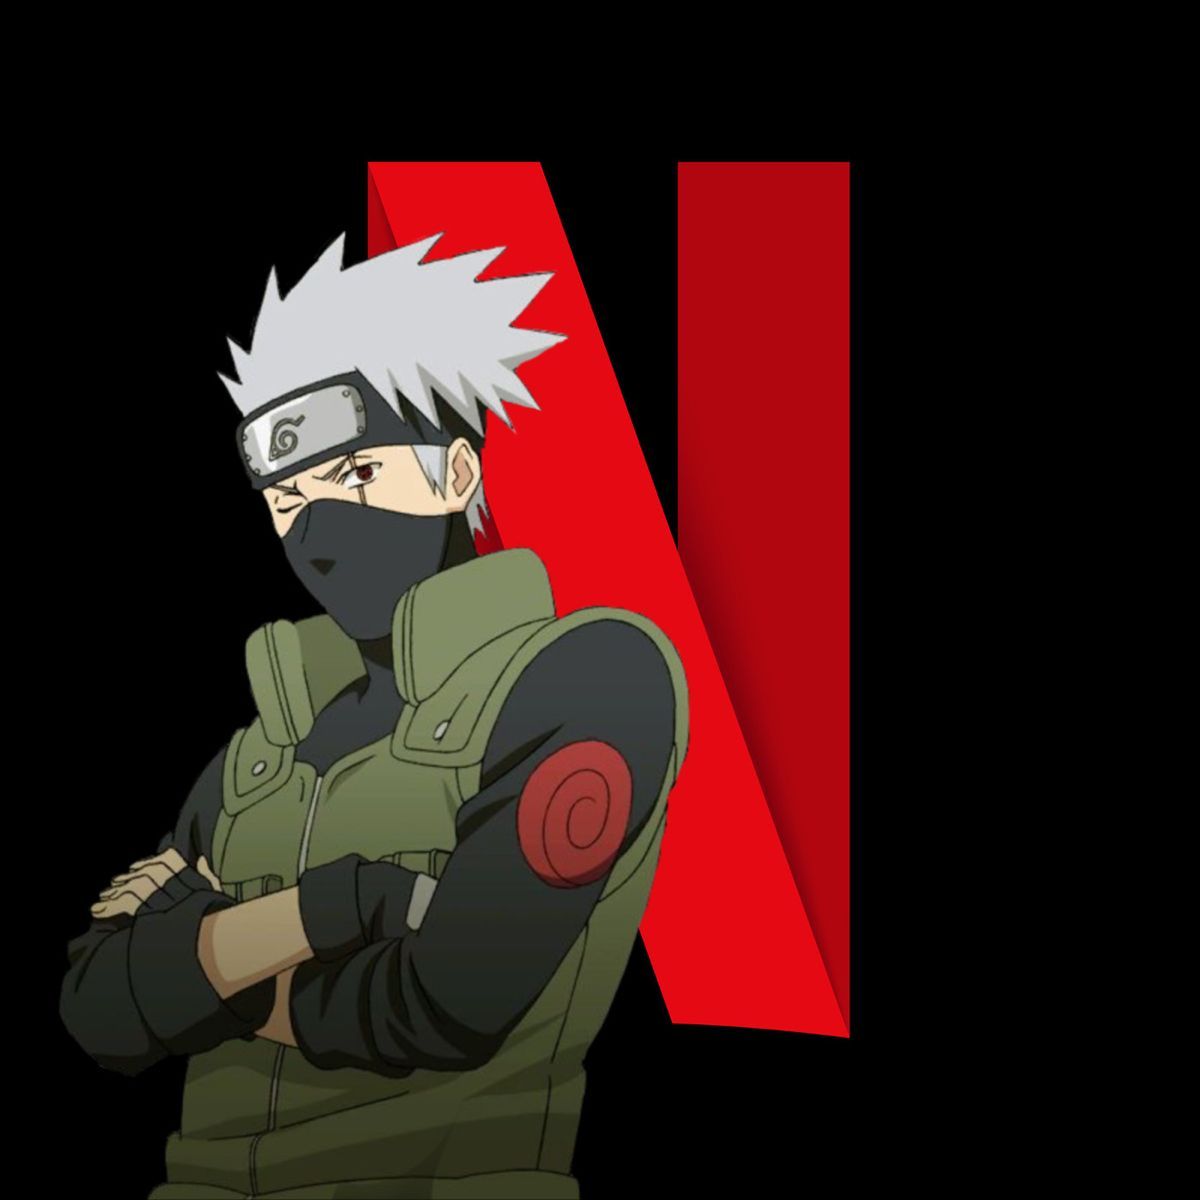 Netflix Anime App Icon. Animated icons, App anime, Naruto wallpaper iphone. Animated icons, App anime, Netflix anime